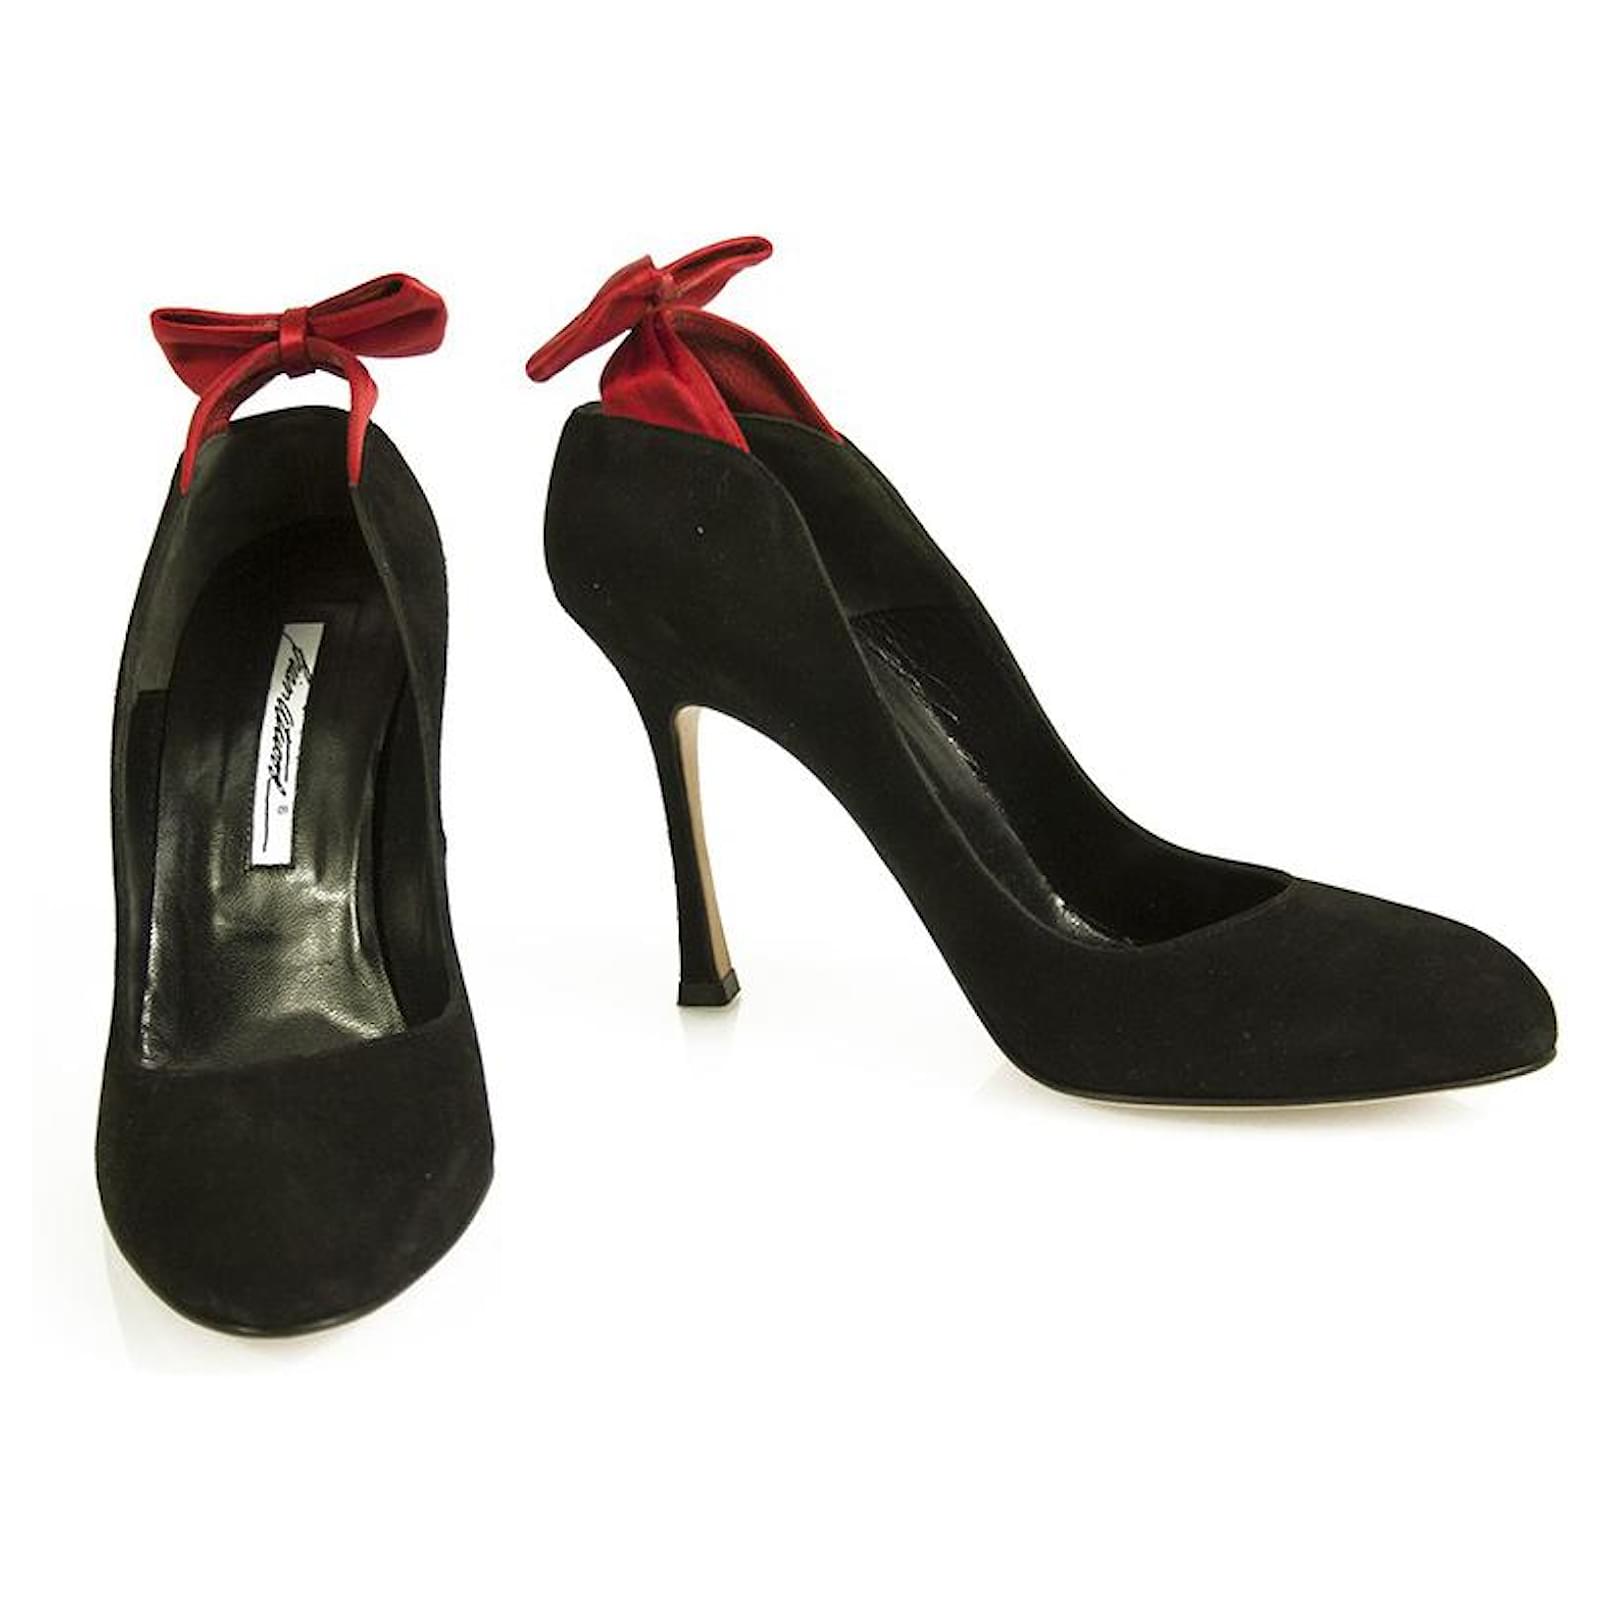 https://cdn1.jolicloset.com/imgr/full/2022/06/558063-1/svezia-brian-atwood-nero-scamosciato-rosso-raso-fiocco-decollete-classiche-scarpe-con-tacchi-taglia-40.jpg